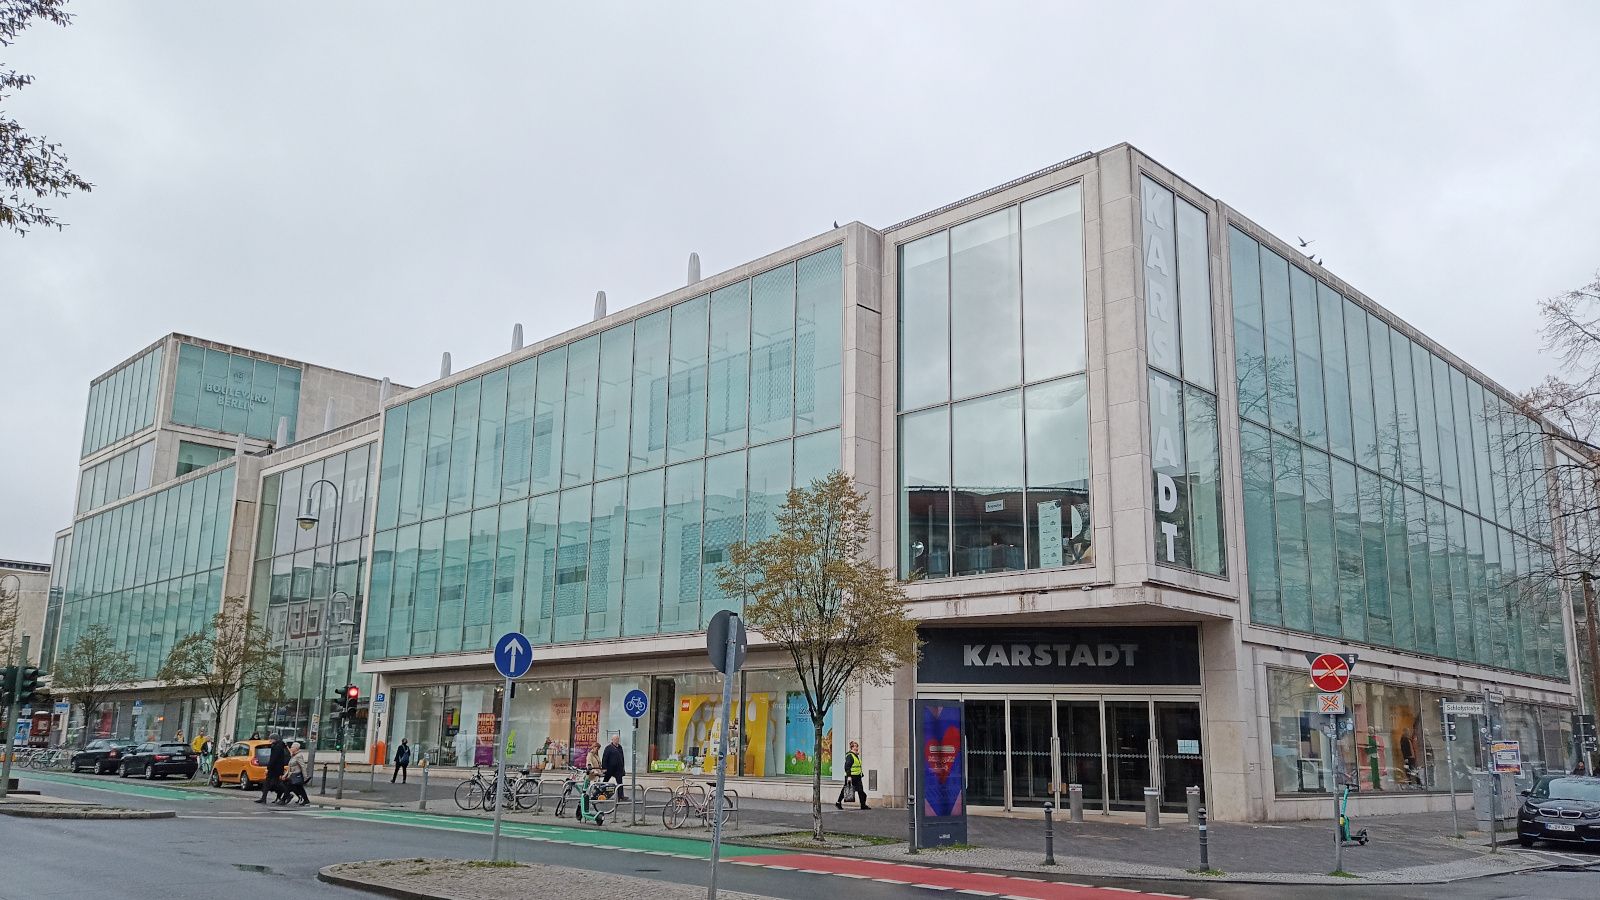 Die Auflösung von Galeria Karstadt Kaufhof, der größten verbliebenen Supermarktkette Deutschlands, wurde beschlossen